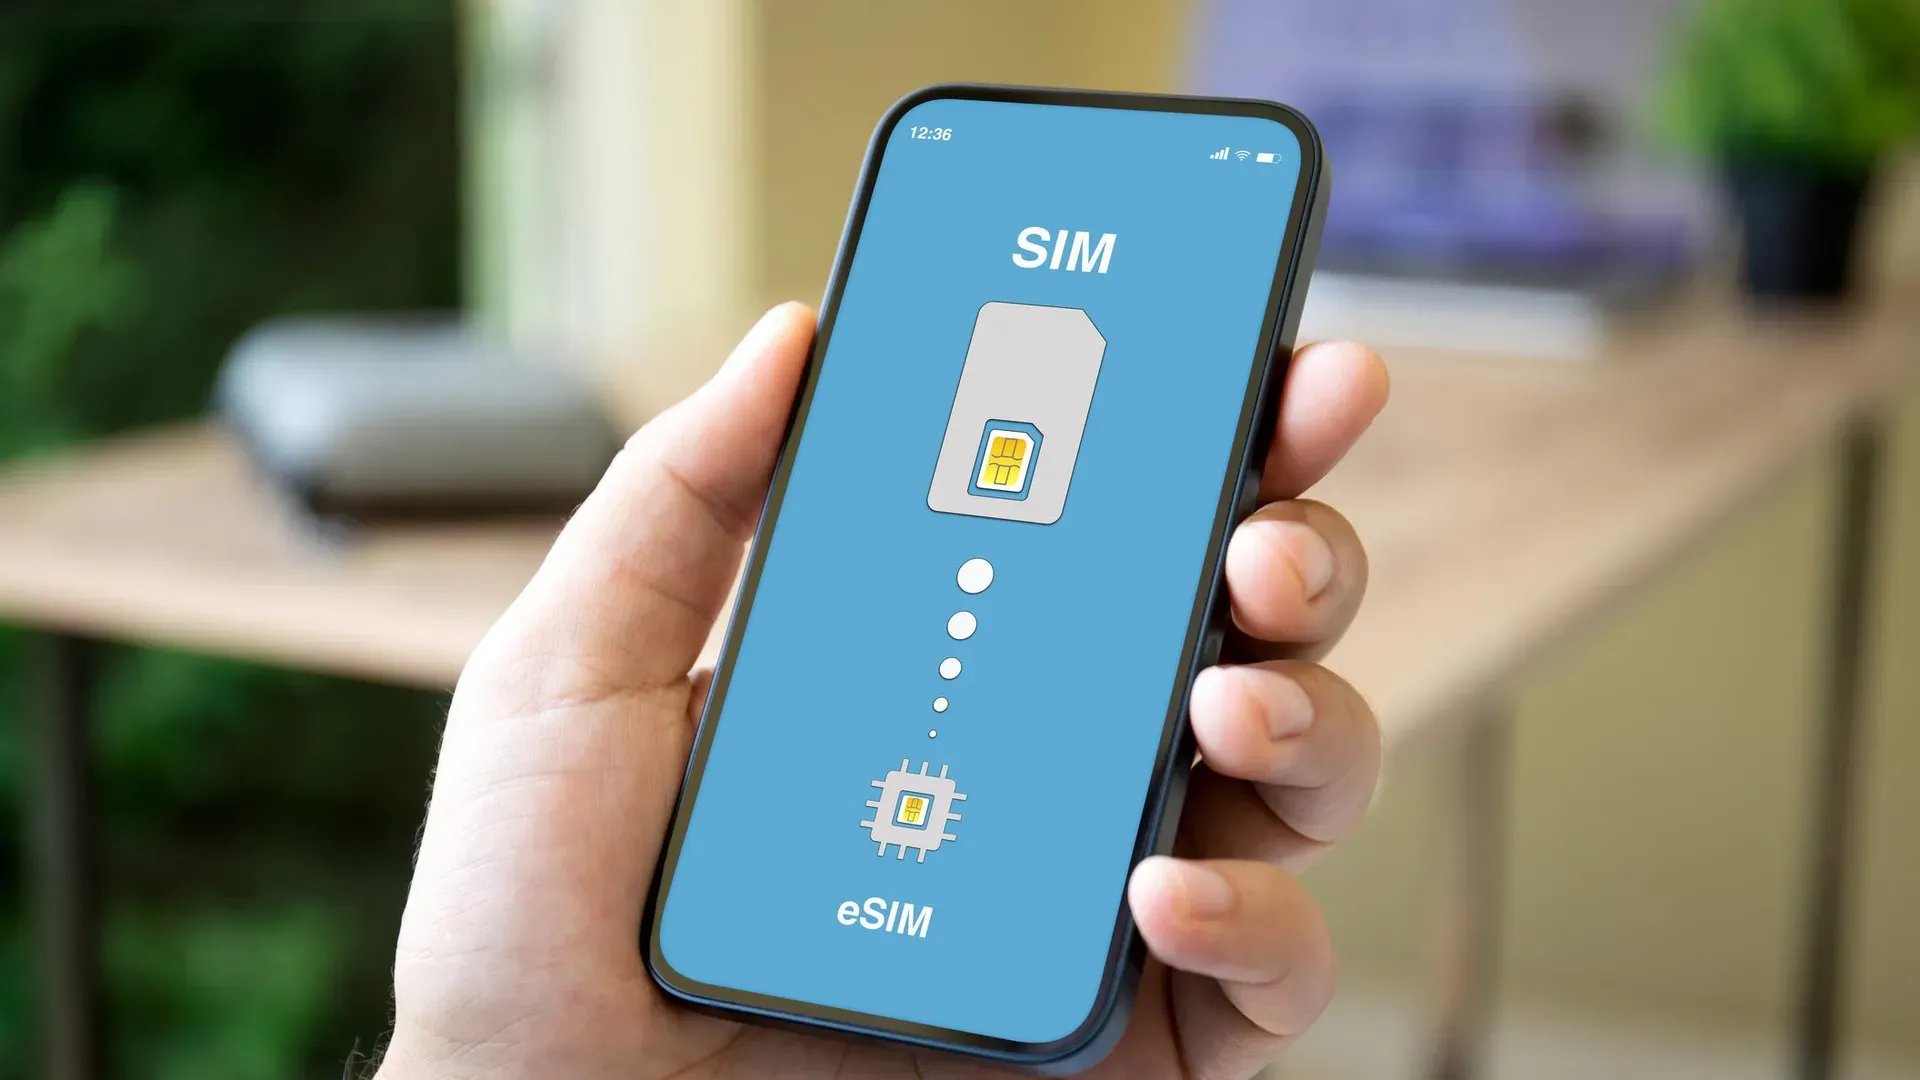 Los celulares inteligentes ya permiten conectar una eSIM para vincular uno o varios números de teléfono.